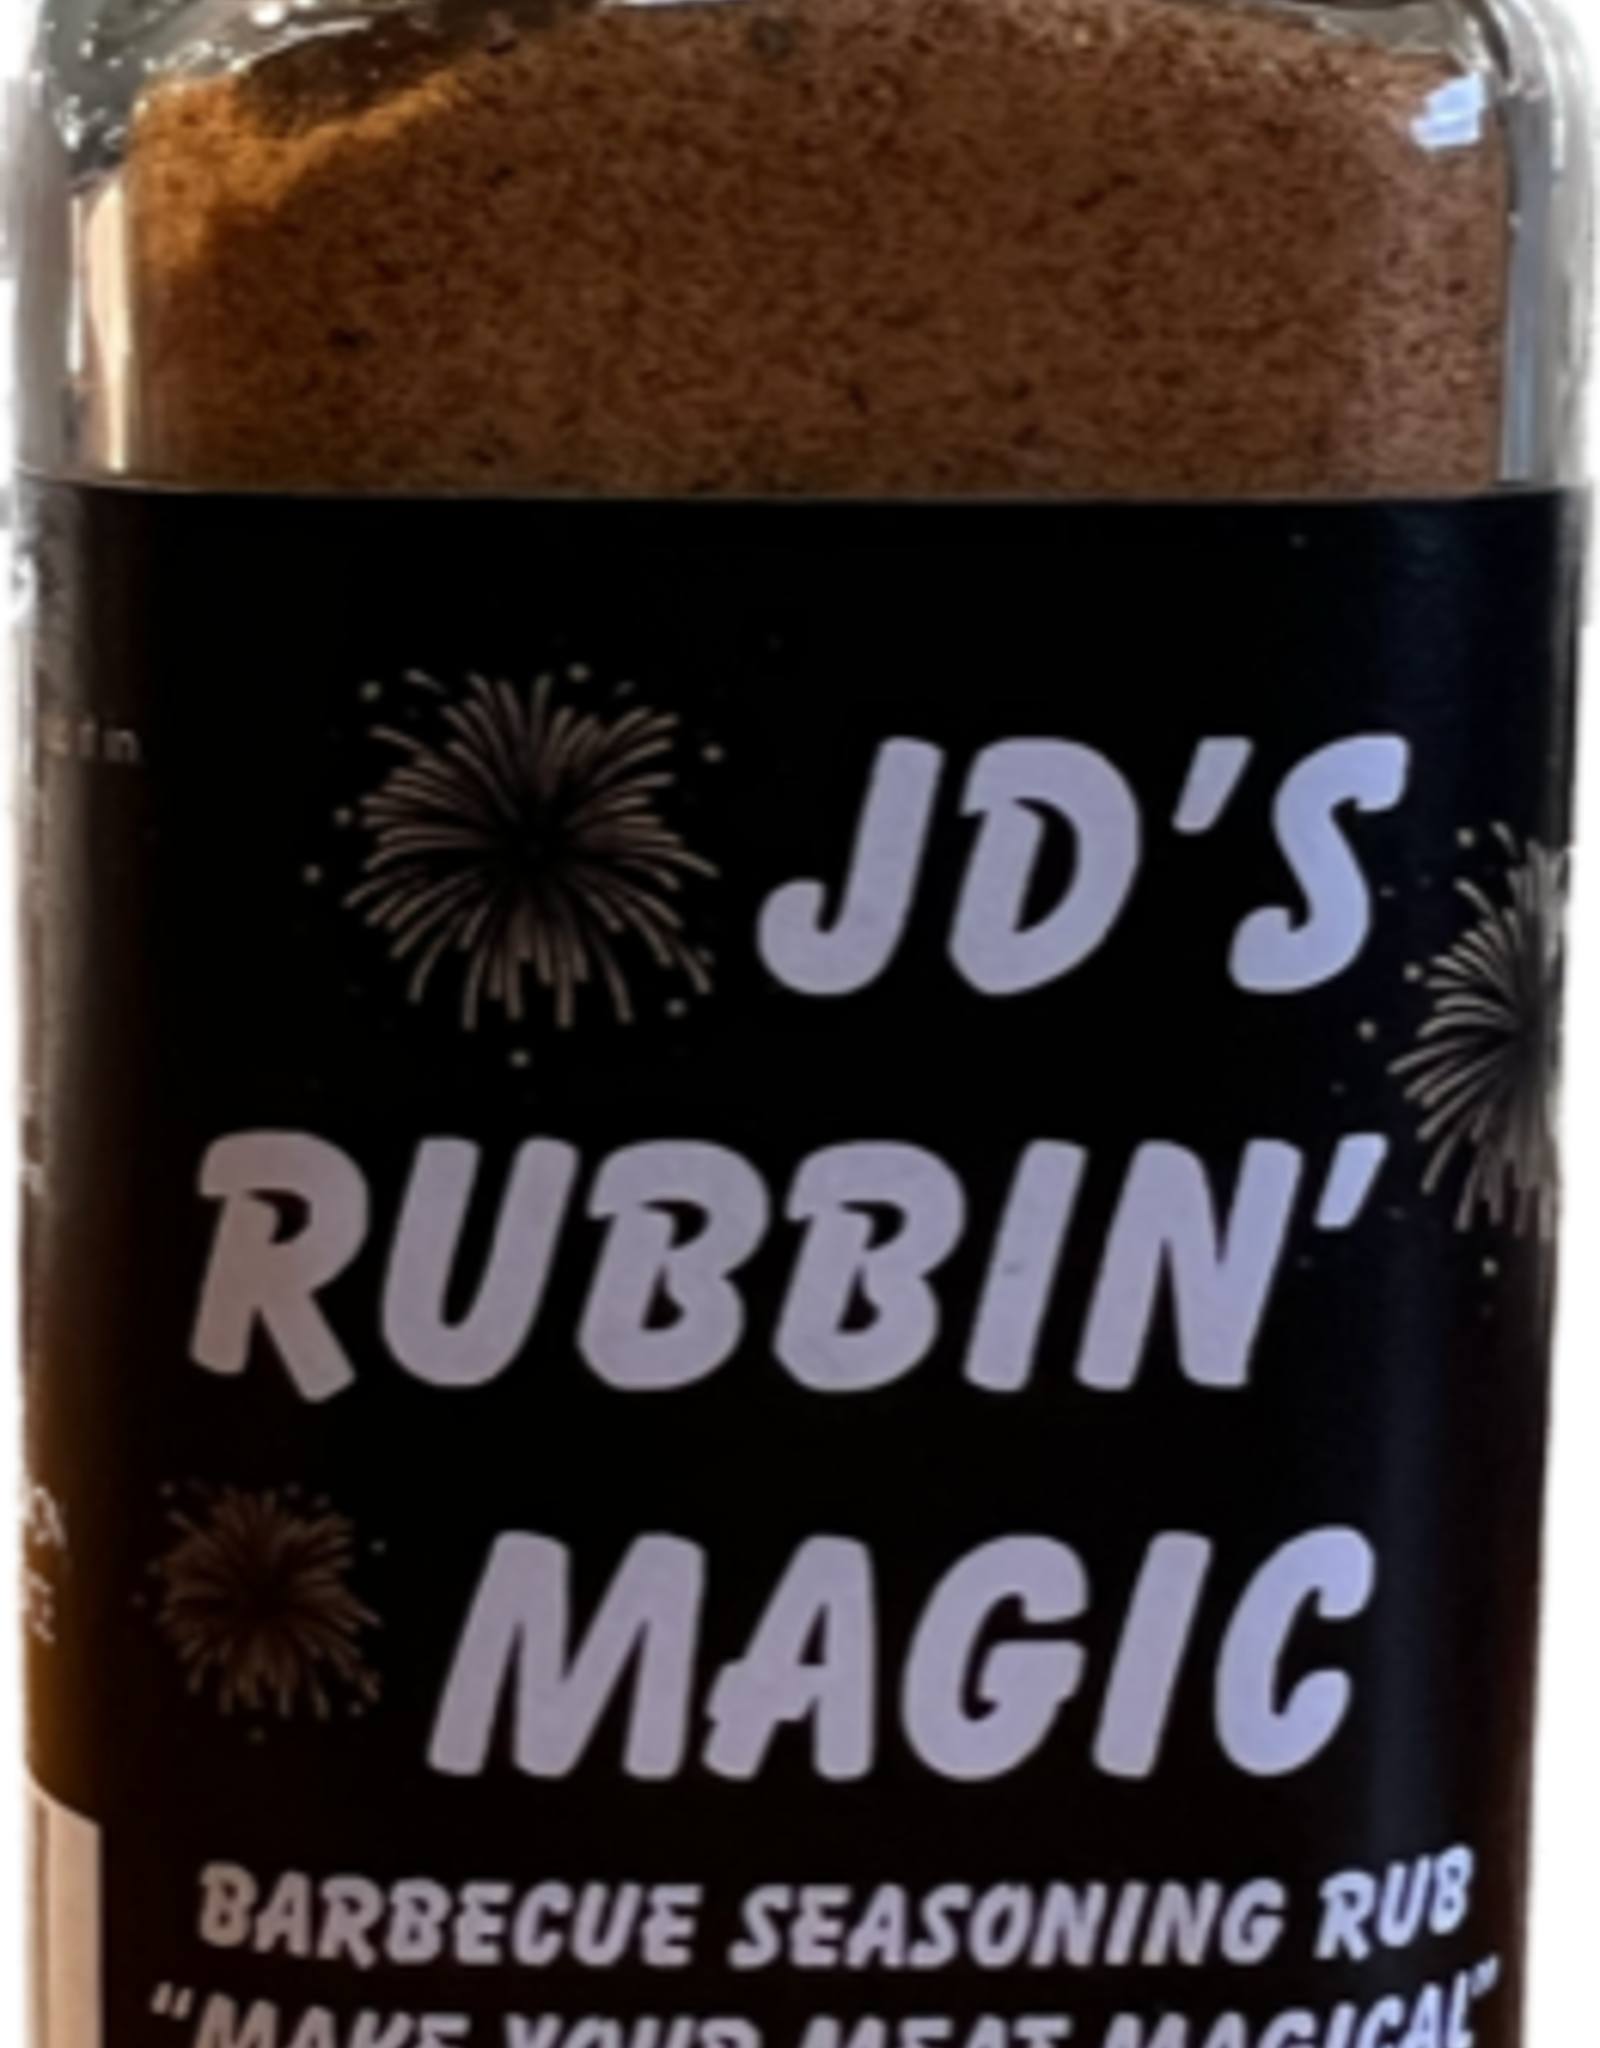 JD's Rubbin Magic